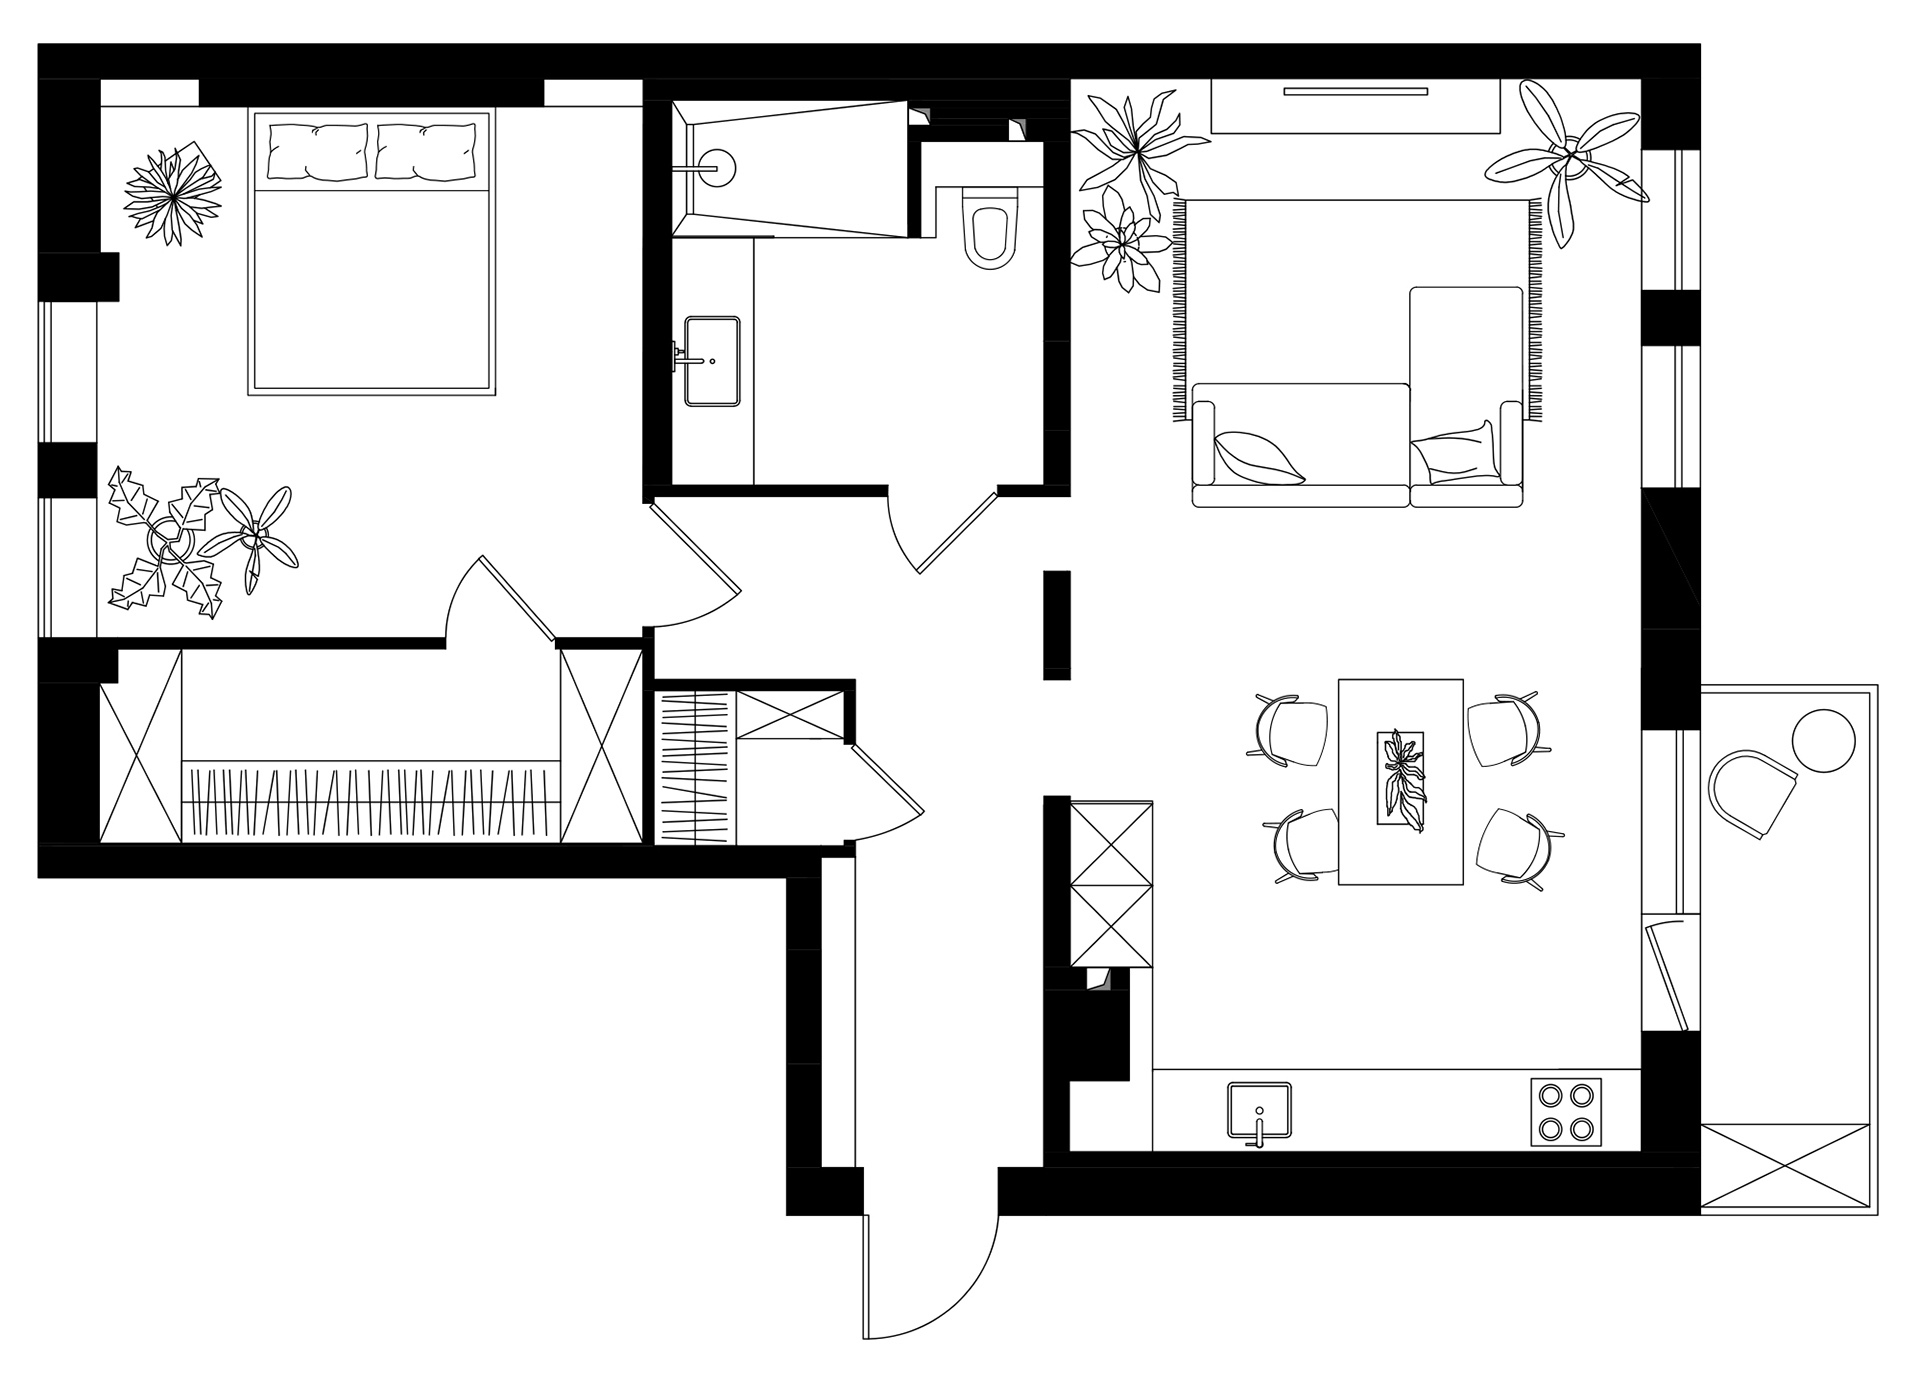 公寓設計,公寓設計案例,聖彼得堡,70㎡,Olga Chut,小公寓設計案例,公寓裝修,最小宅,白色+原木色